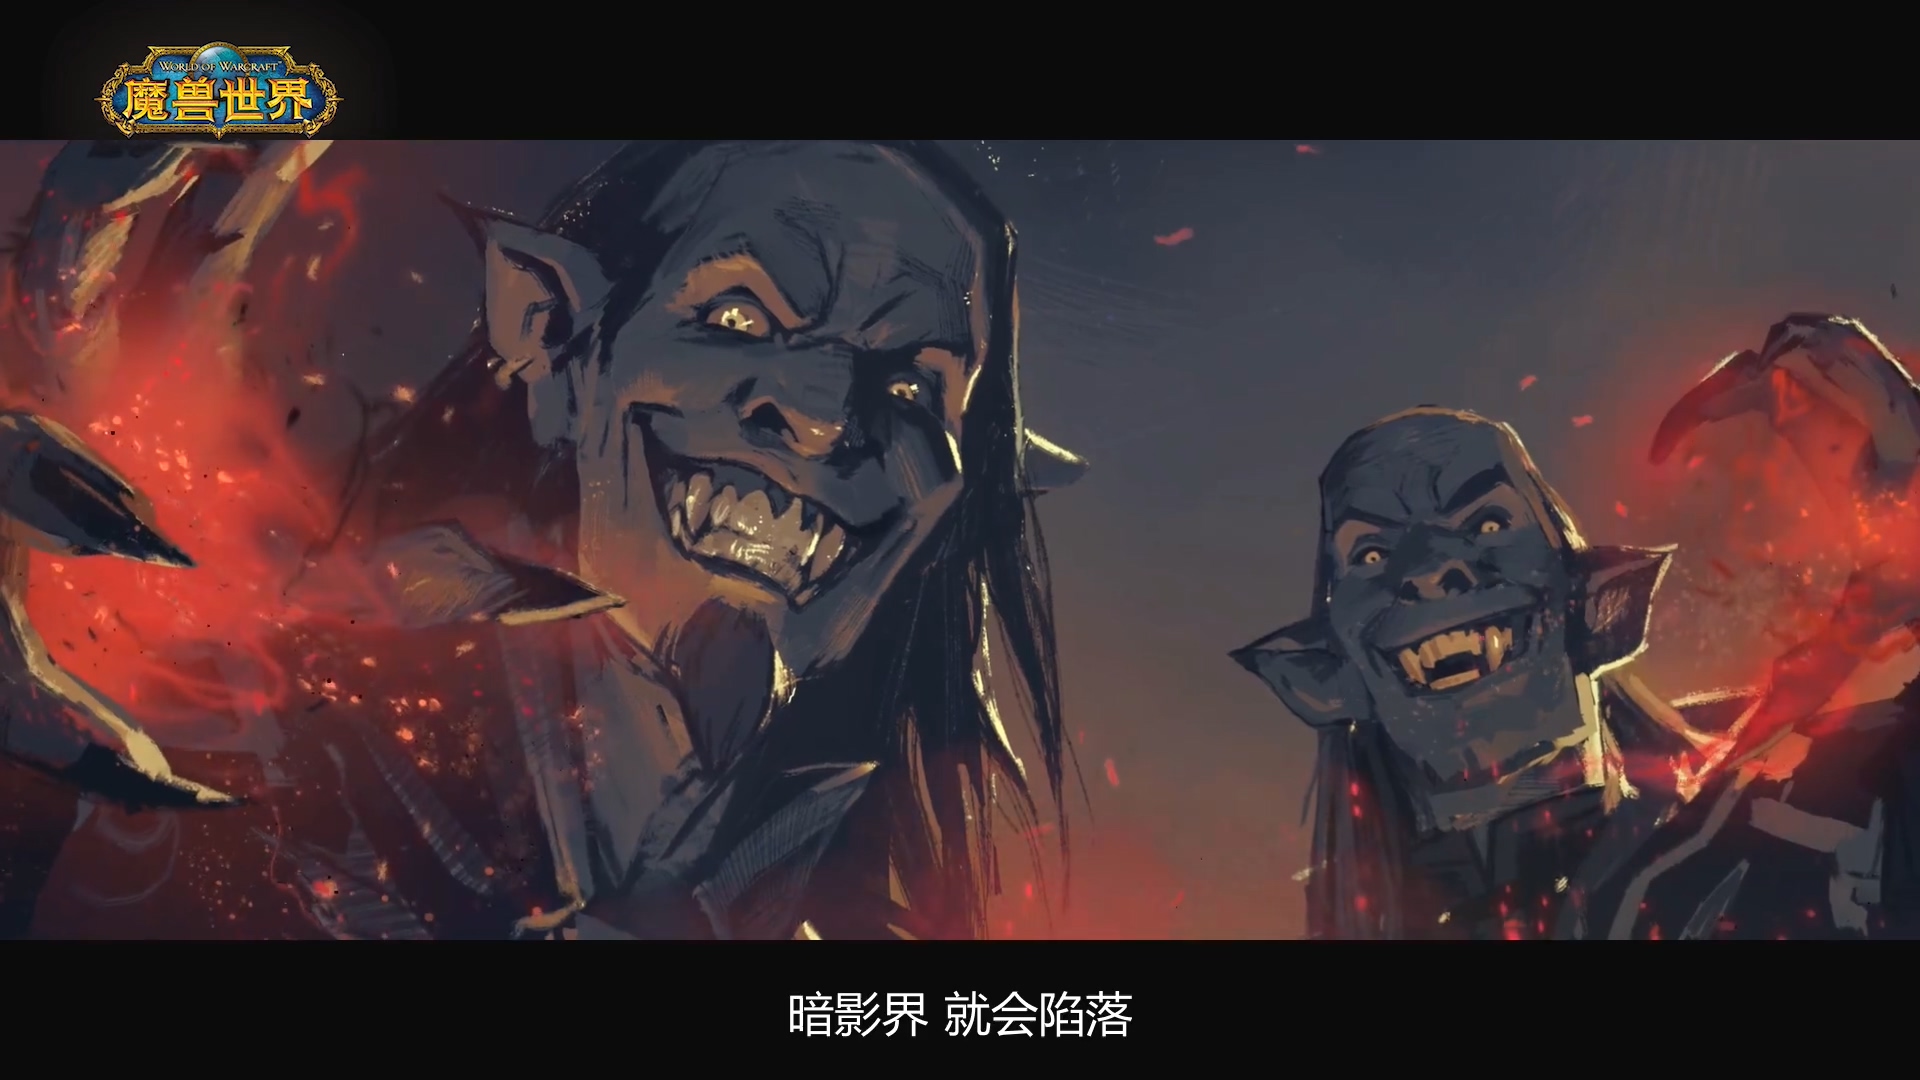 《魔兽世界》“暗影国度”系列动画短片“彼岸之地”预告放出 将于8月28日播出